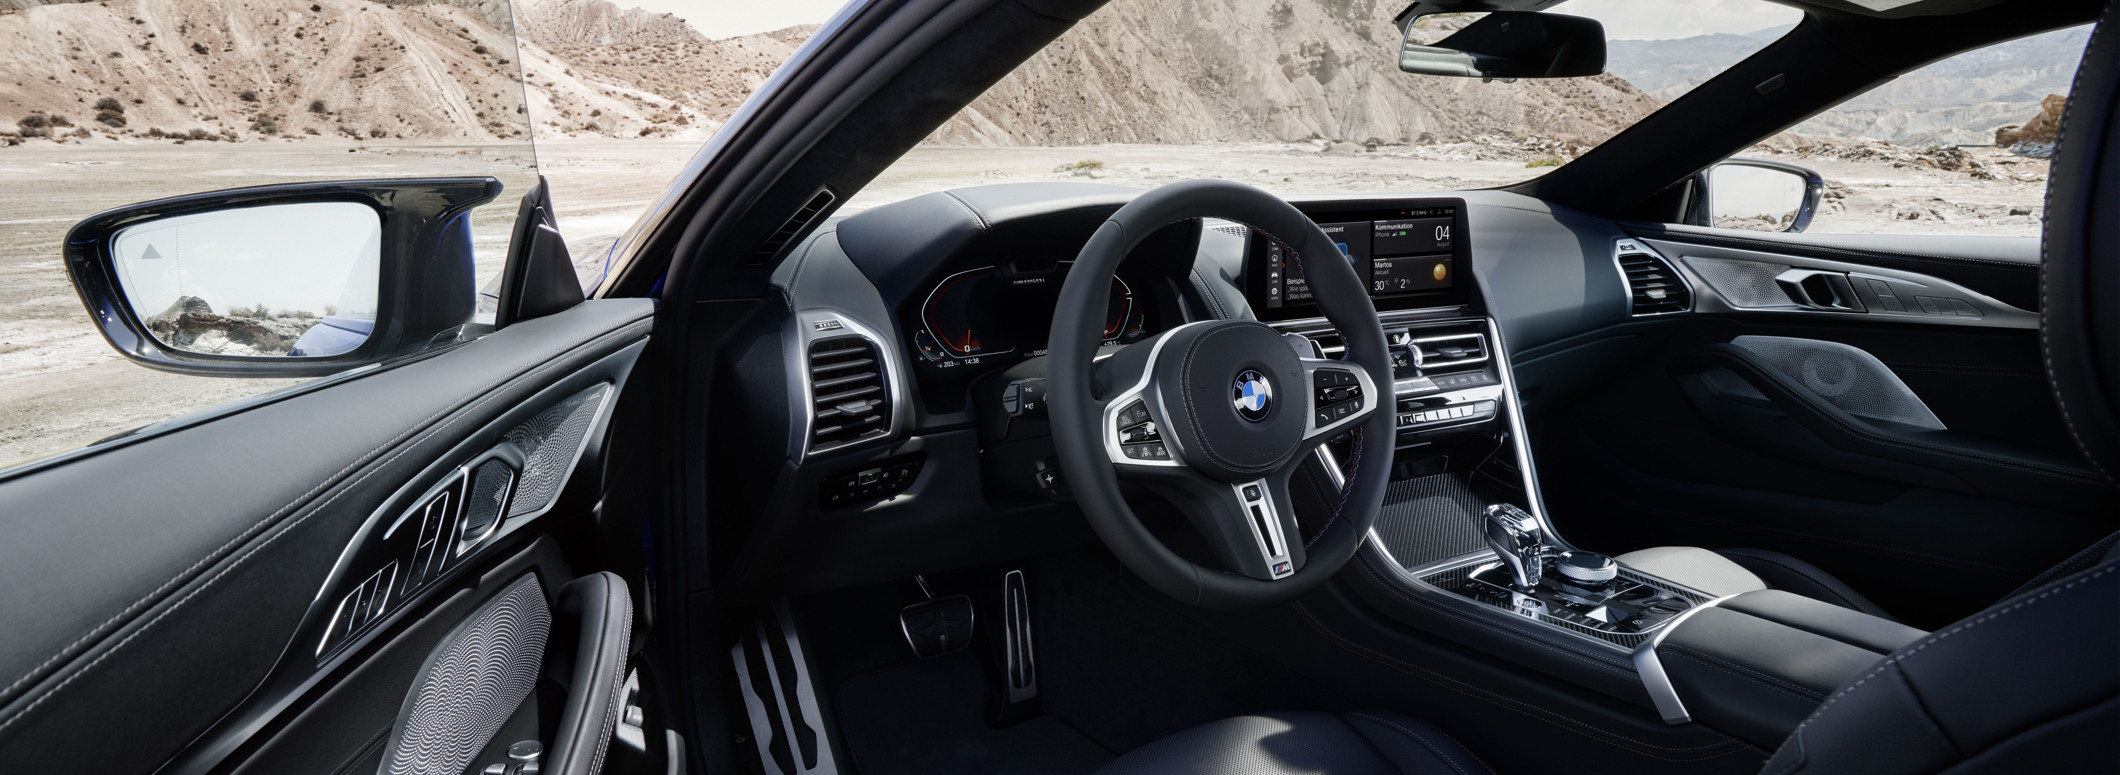 BMW 8. sērijas salons